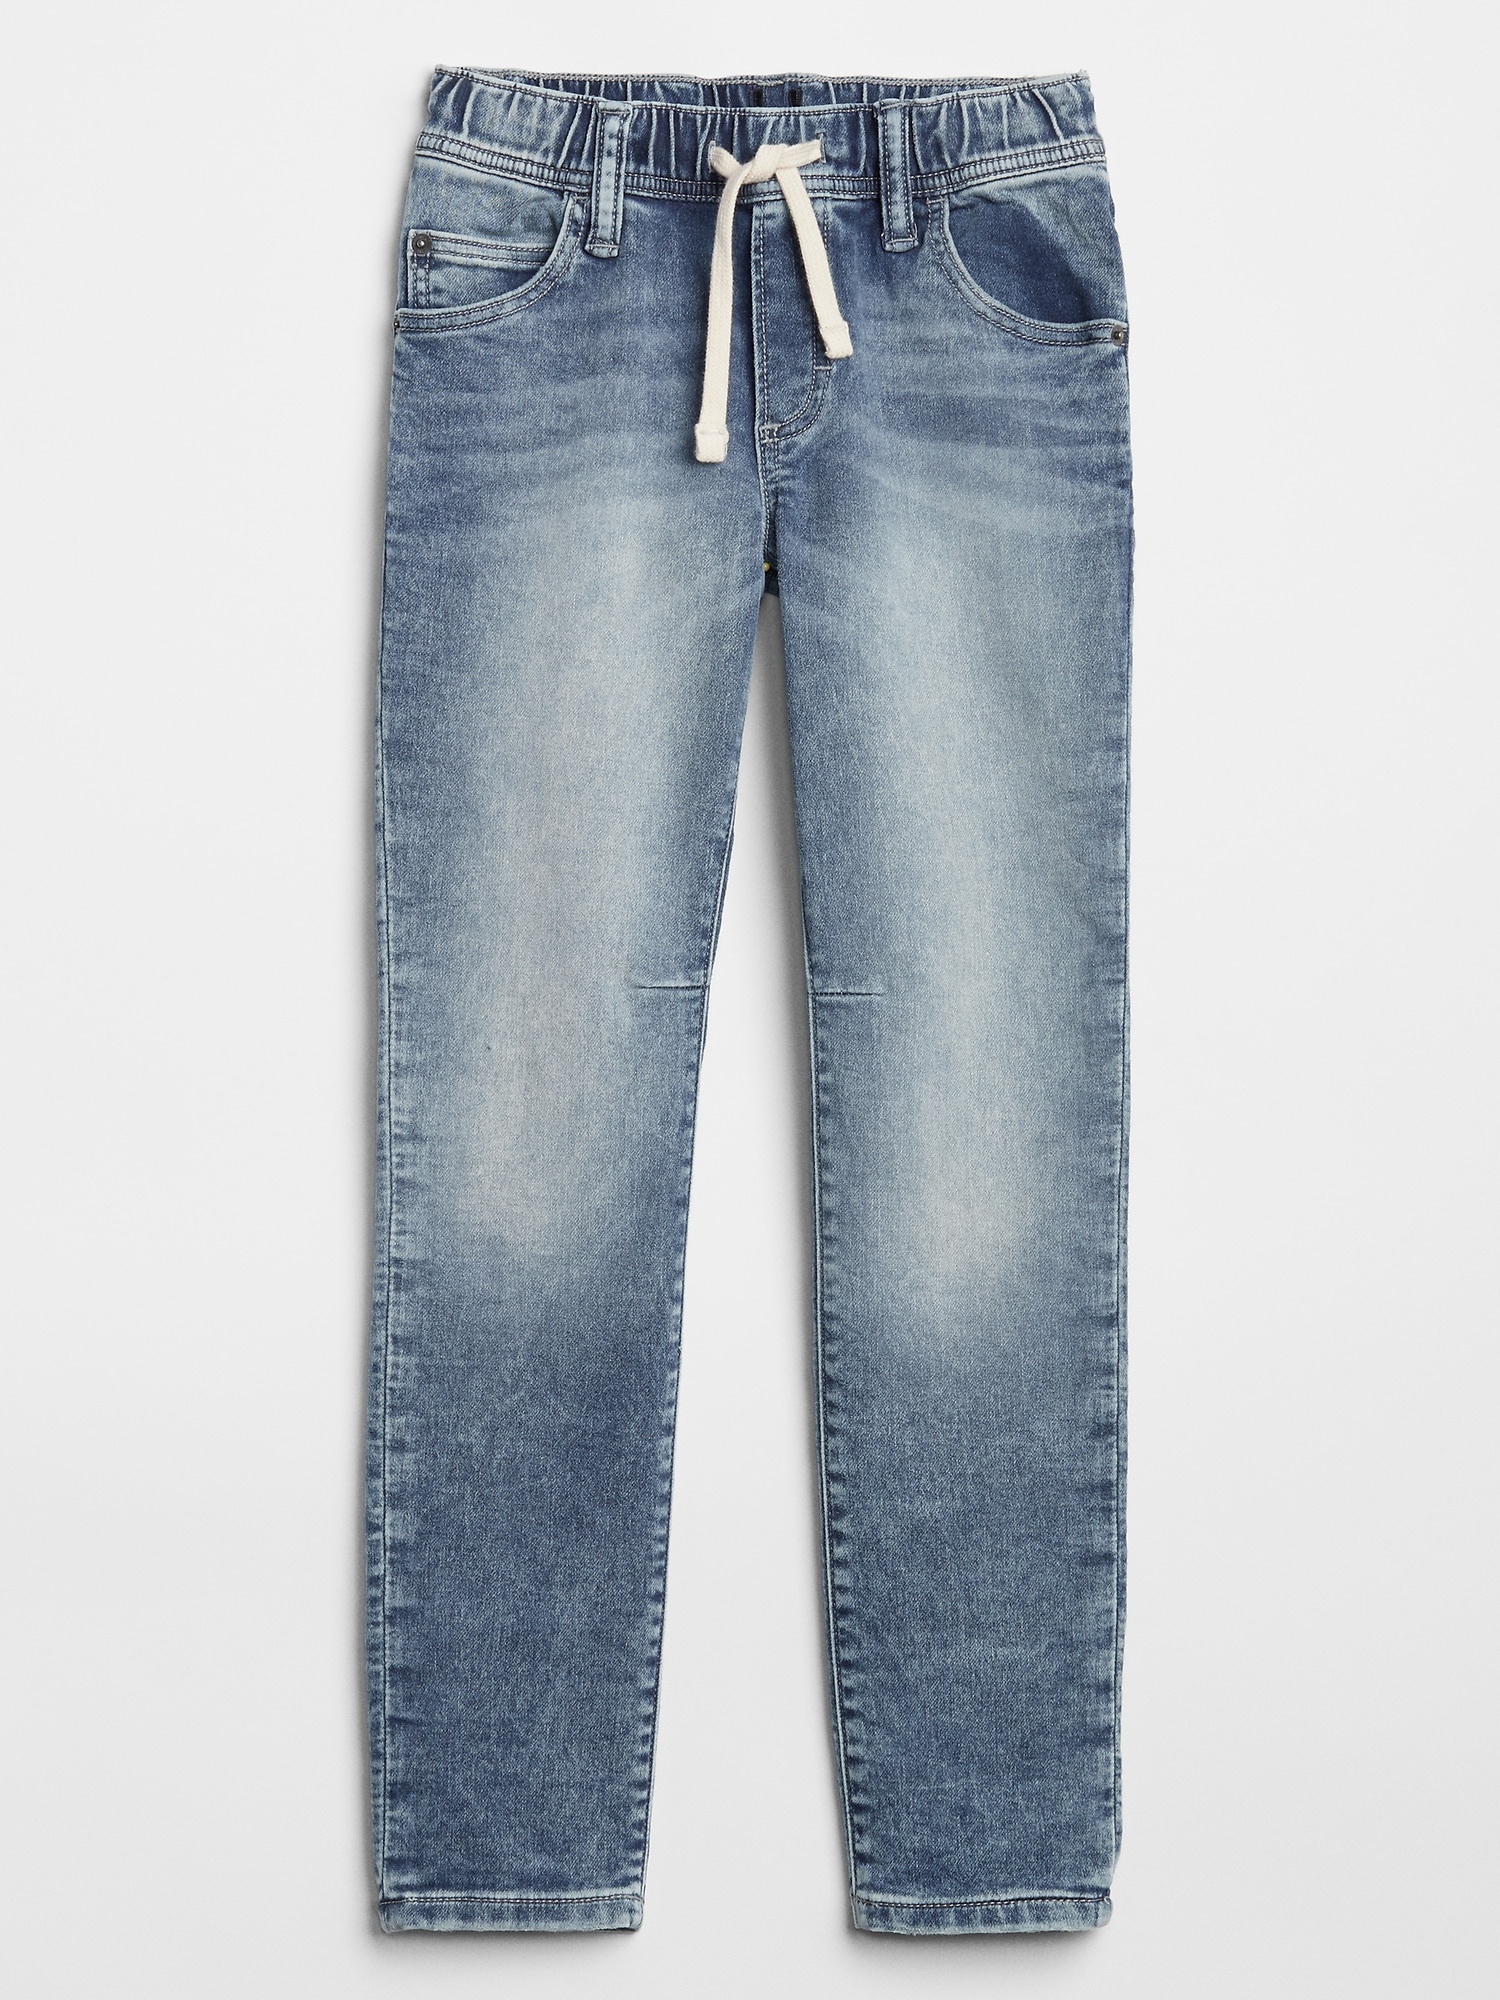 arizona jeans price